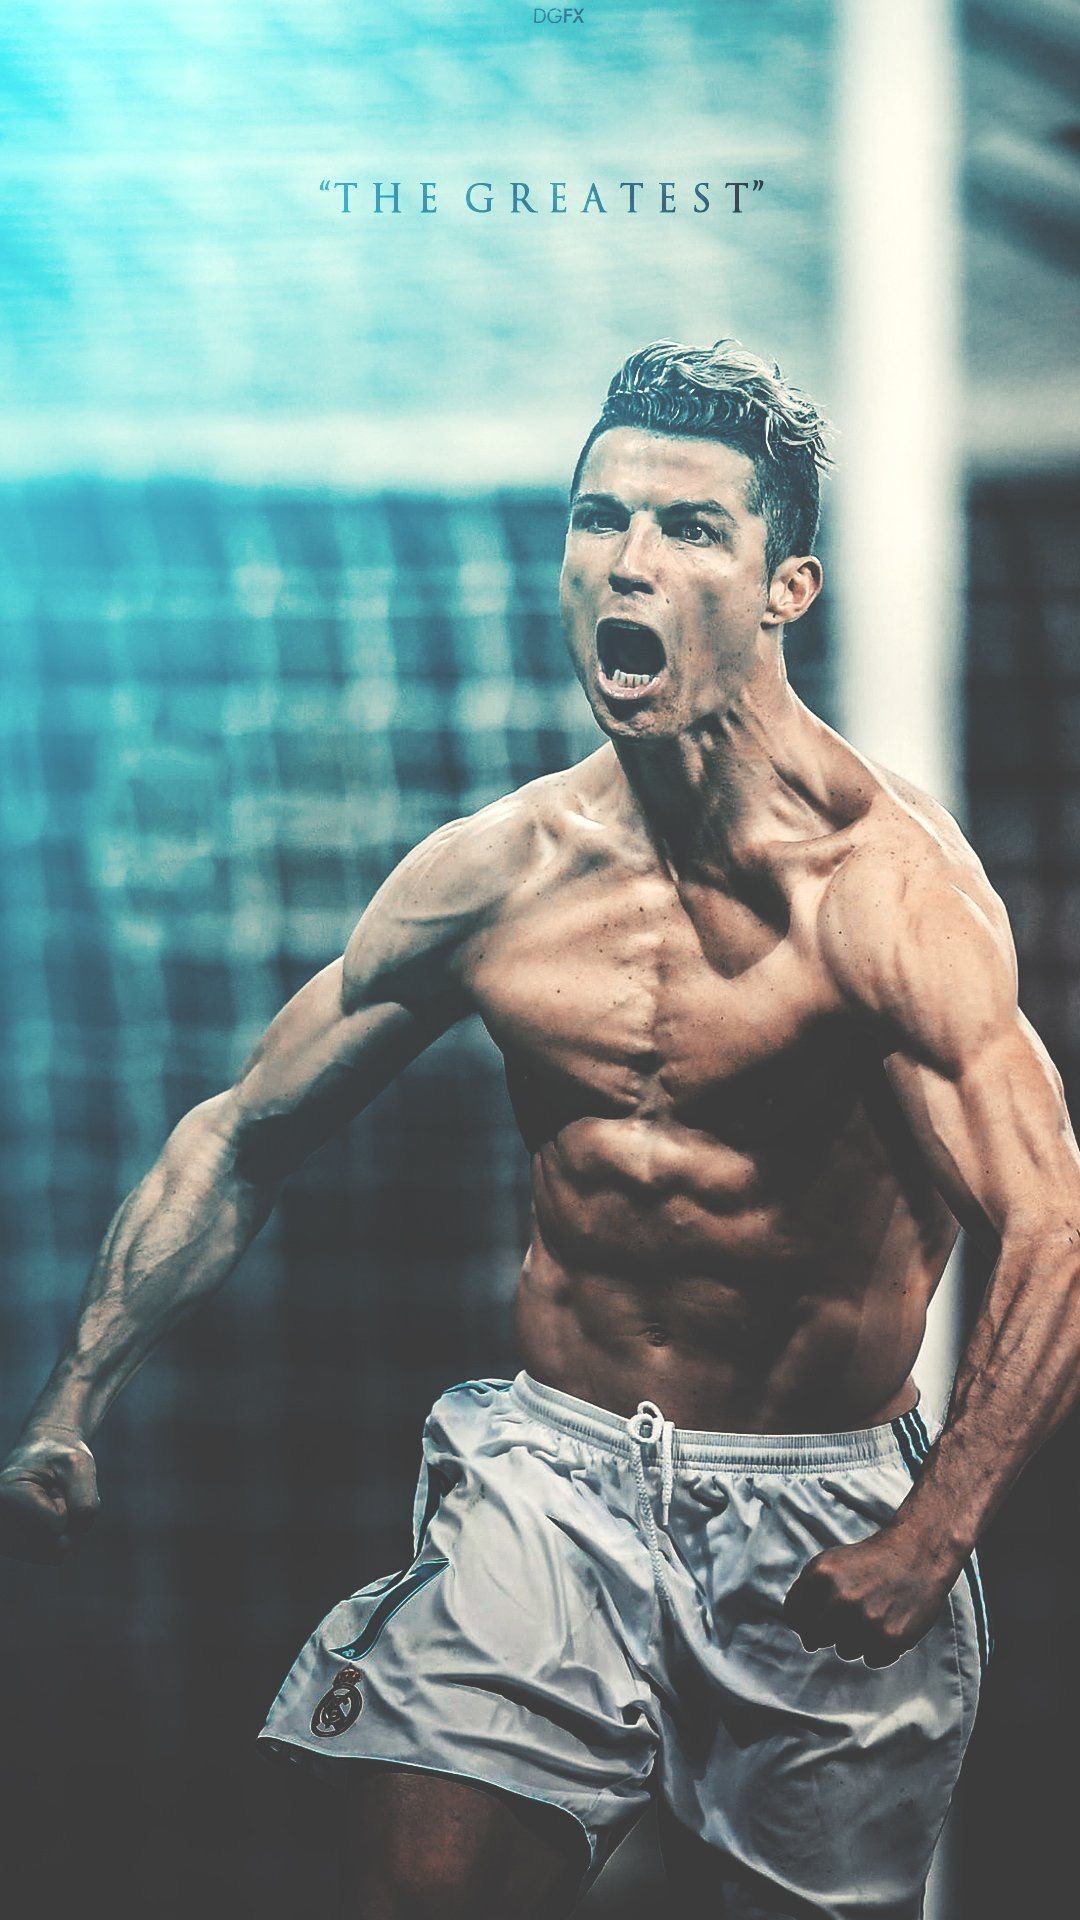 Cristiano Ronaldo có thể kiếm được 52 tỷ đồng từ một đăng tải - 1